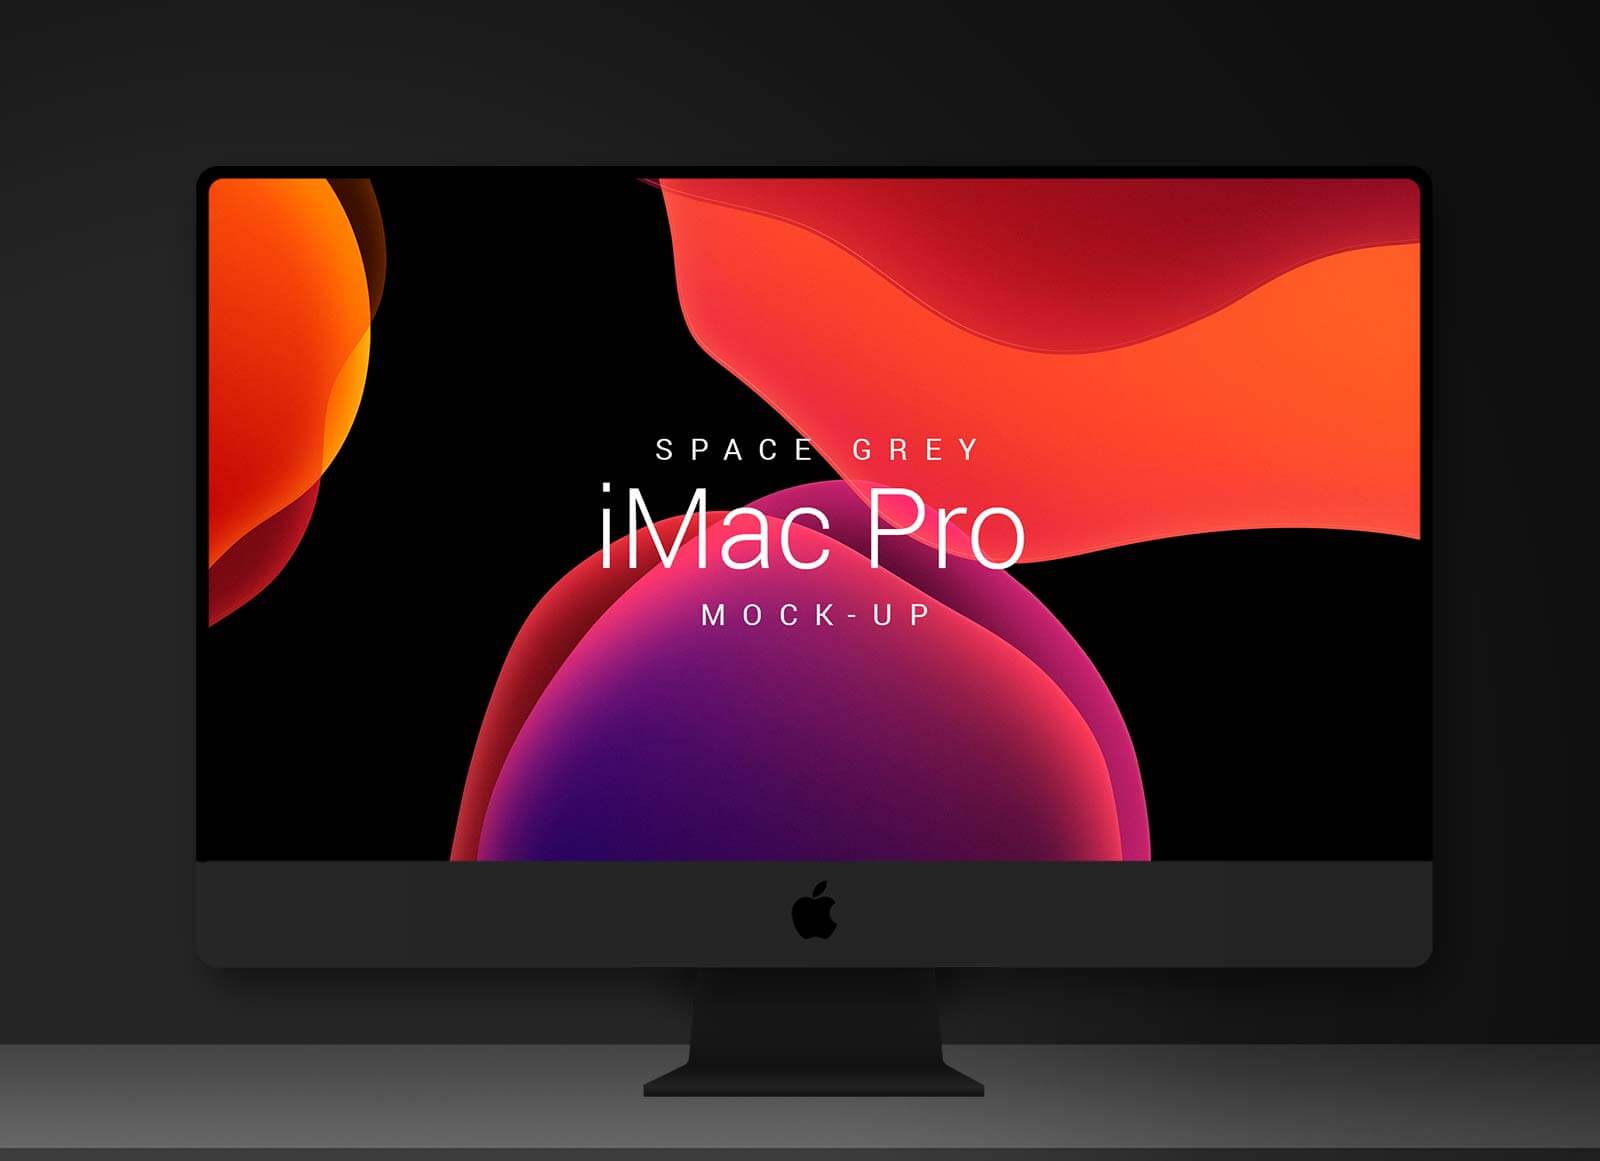 Free-Space-Grey-5K-Apple-iMac-Pro-Mockup-PSD